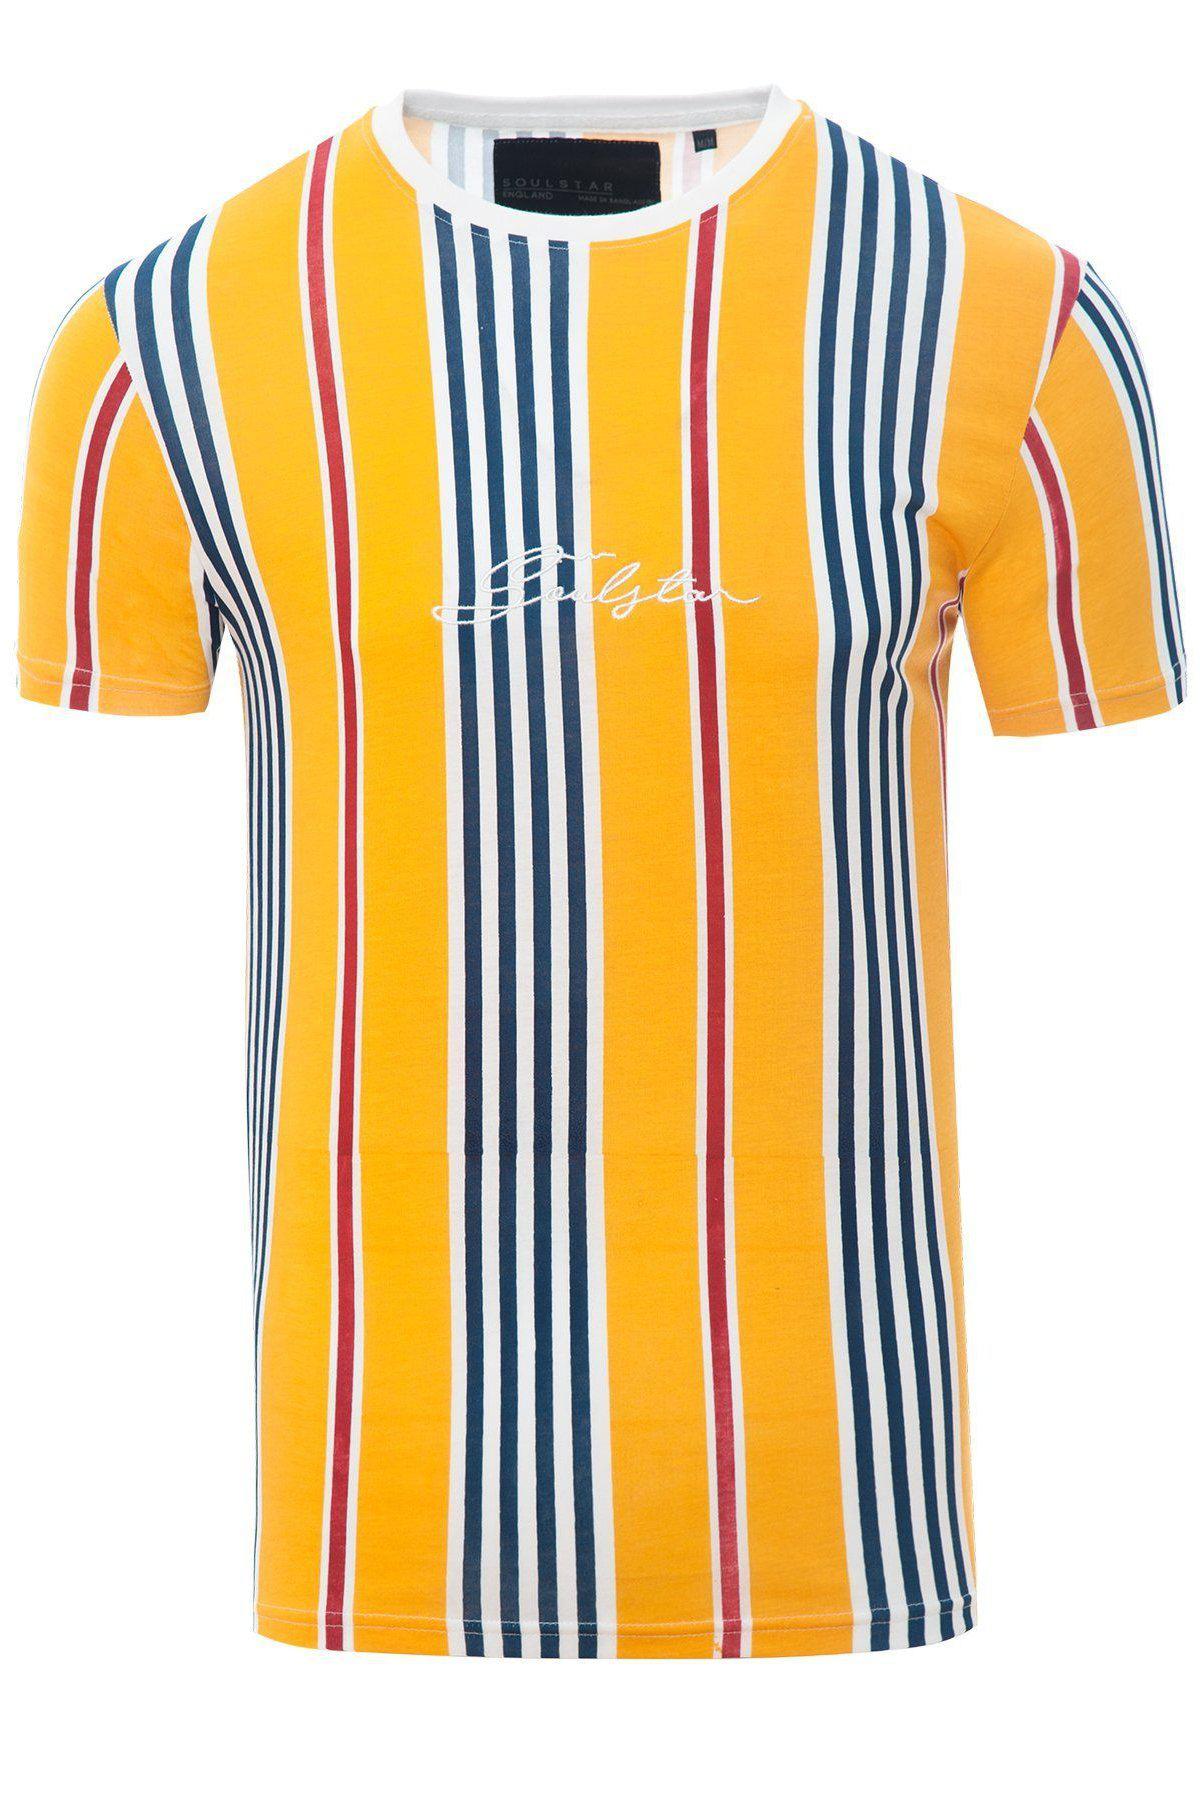 T-Shirts - Stripe Signature T-Shirt Yellow